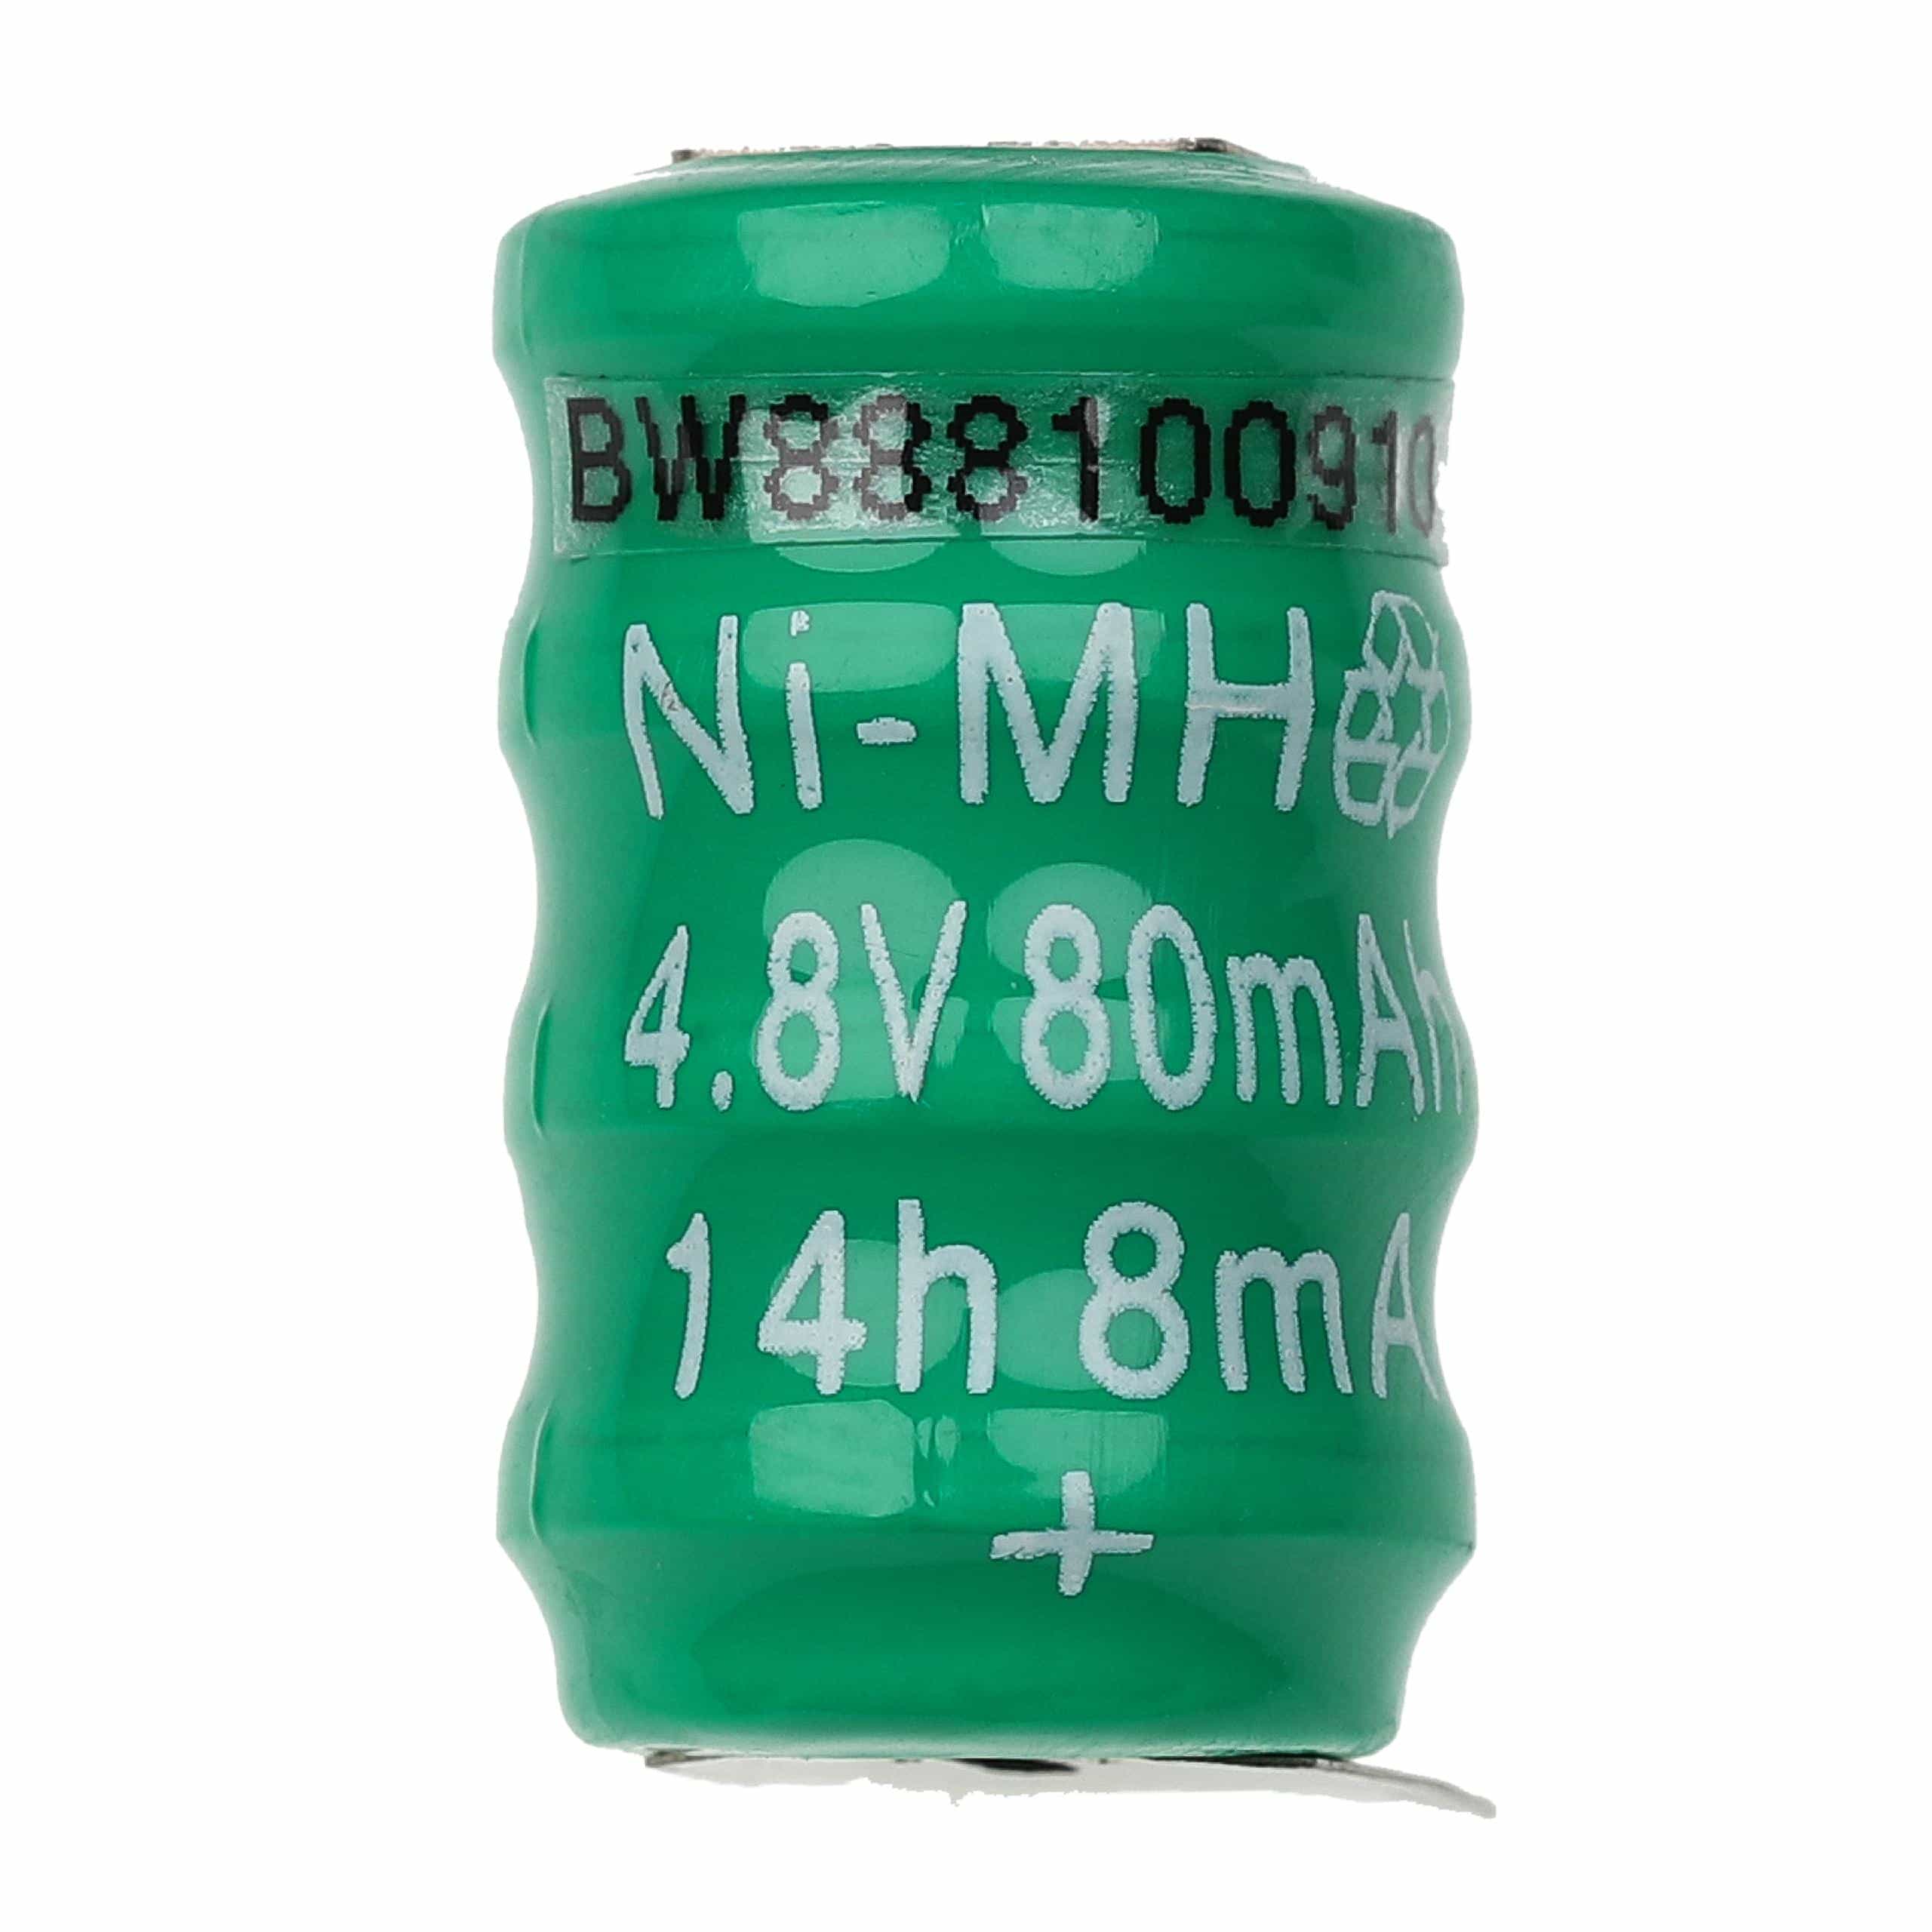 Batteria a bottone (4x cella) tipo V80H 3 pin sostituisce V80H per modellismo, luci solari ecc. 